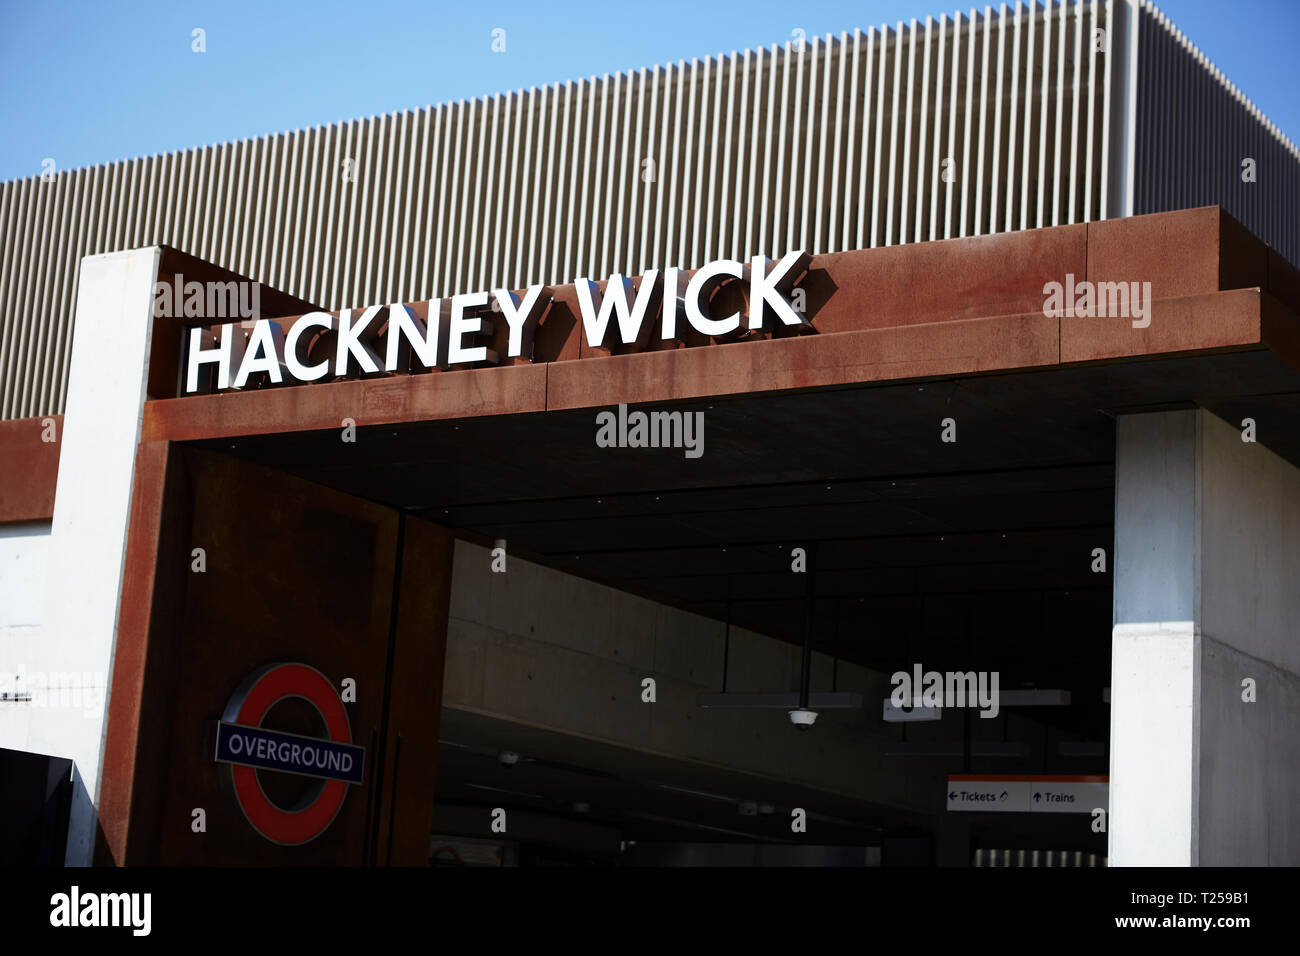 La estación Hackney wick superficial Foto de stock